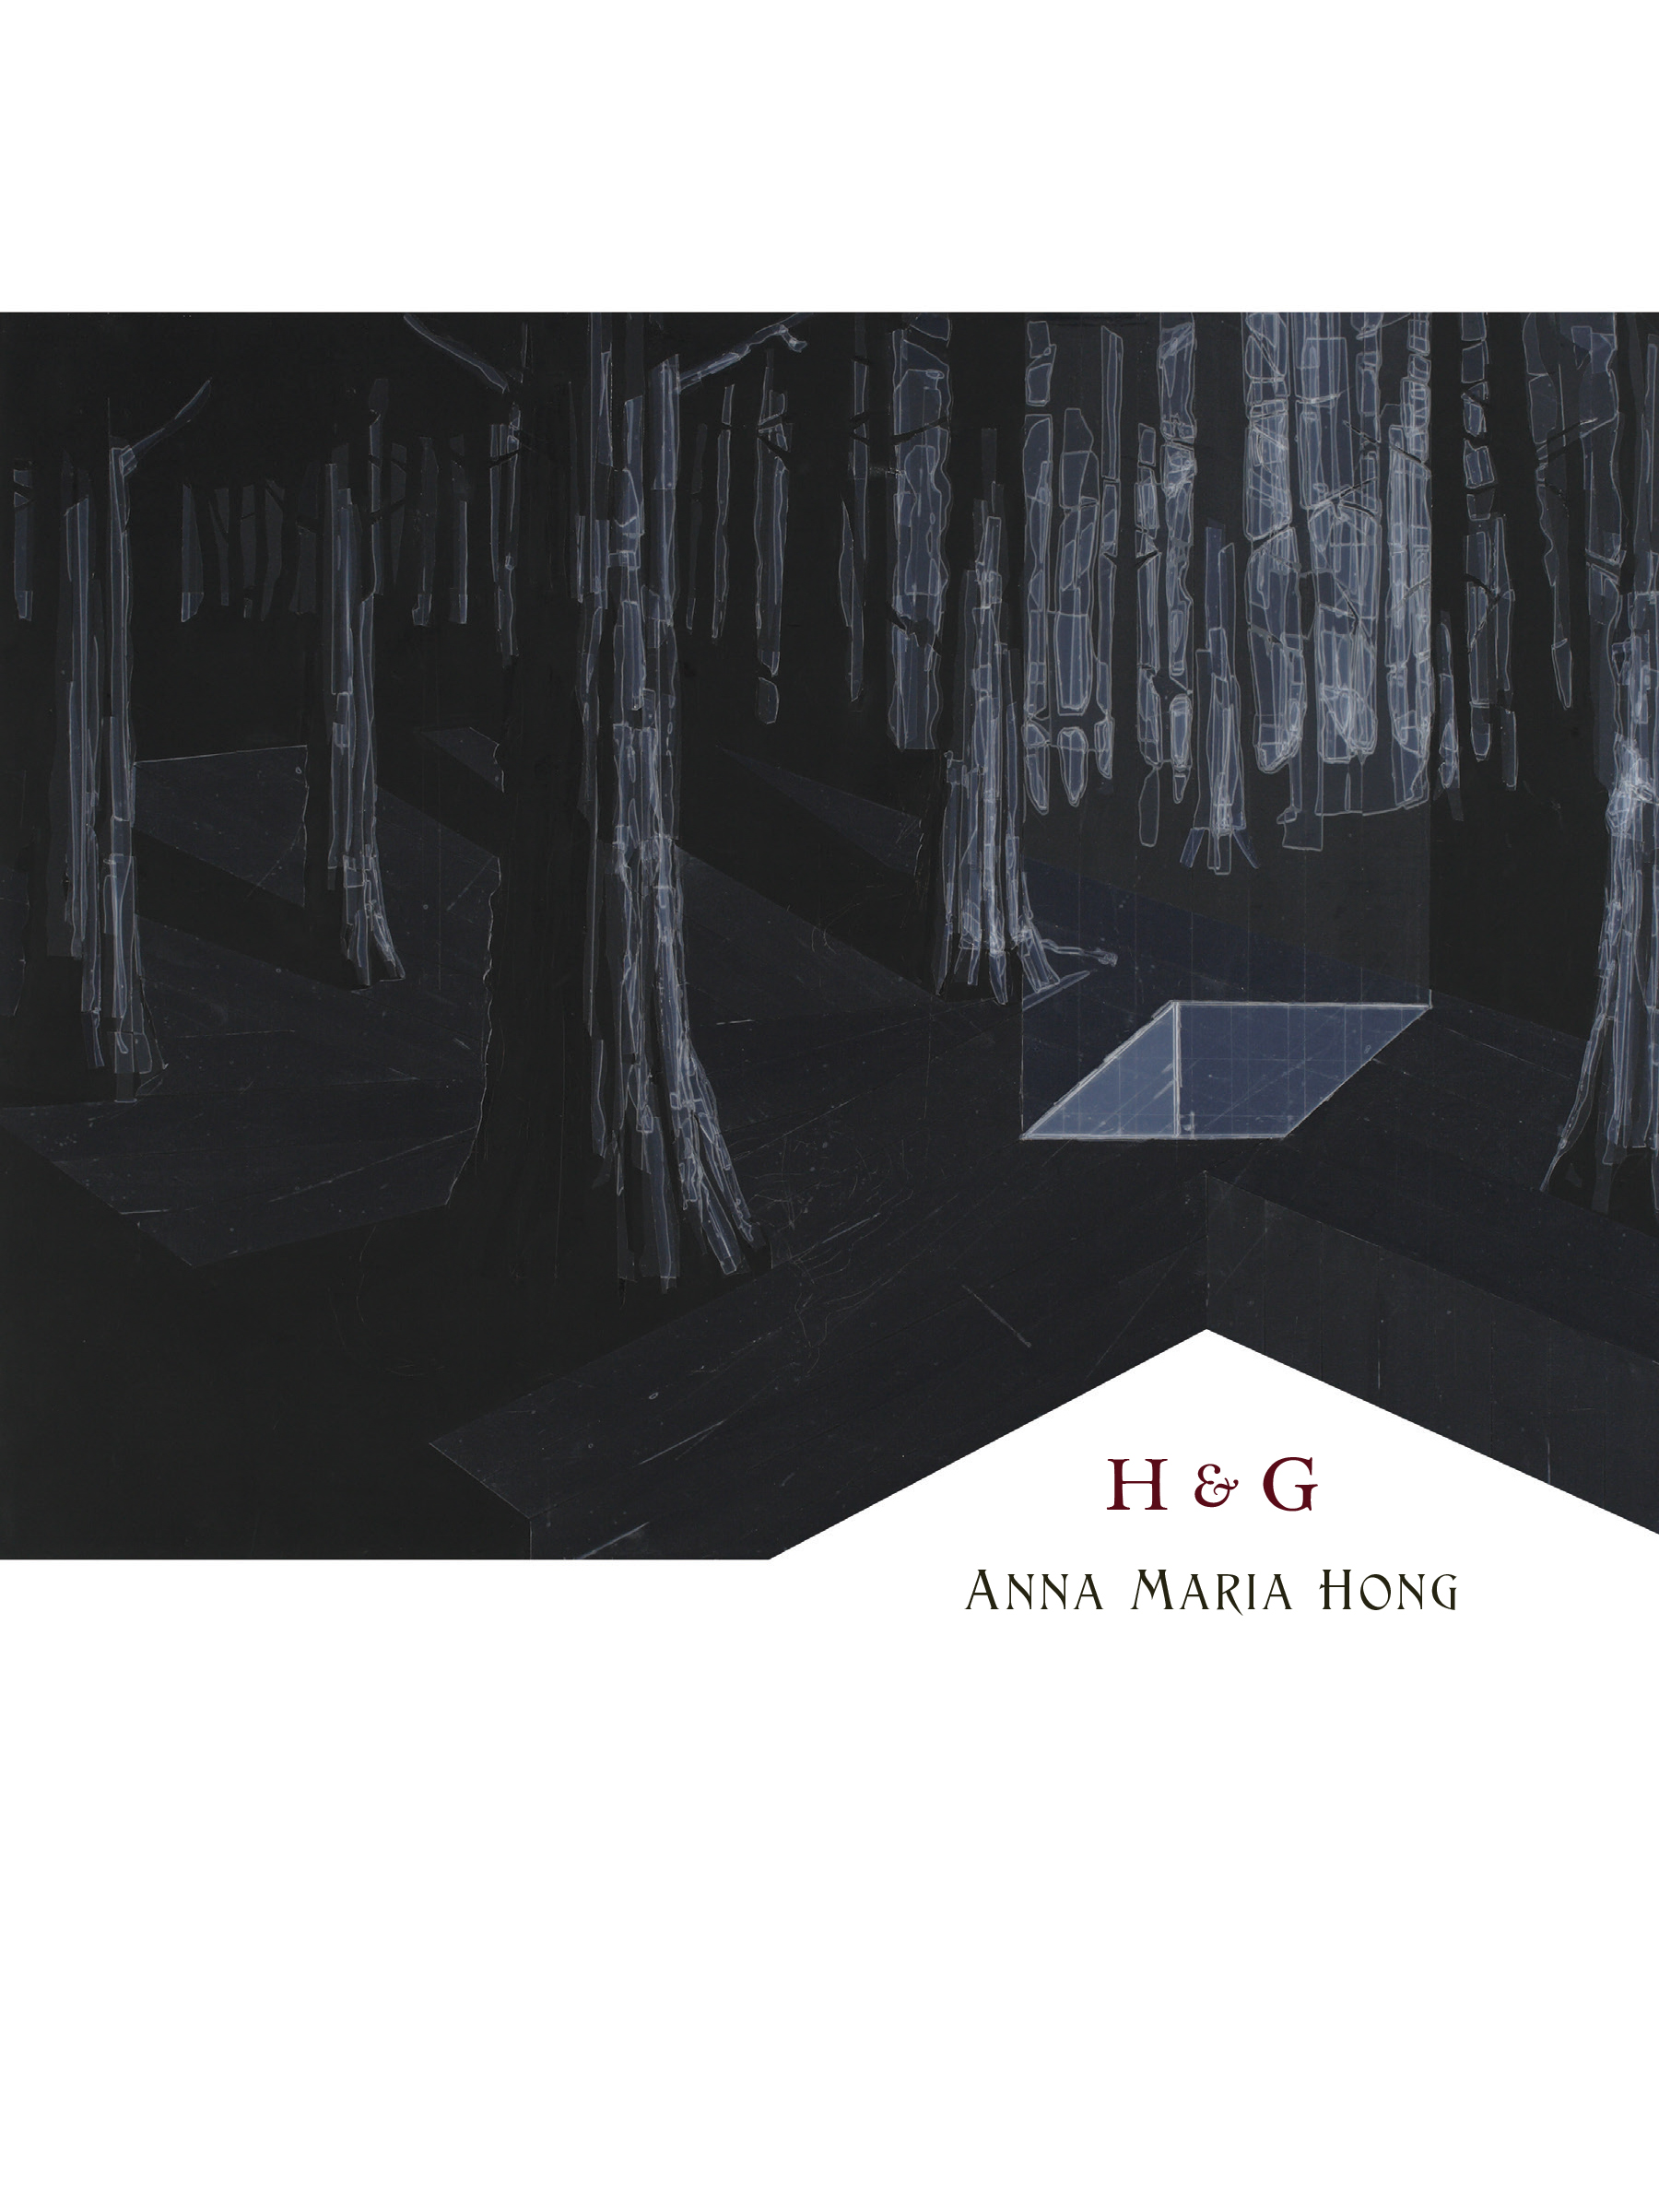 H & G by Anna Maria Hong